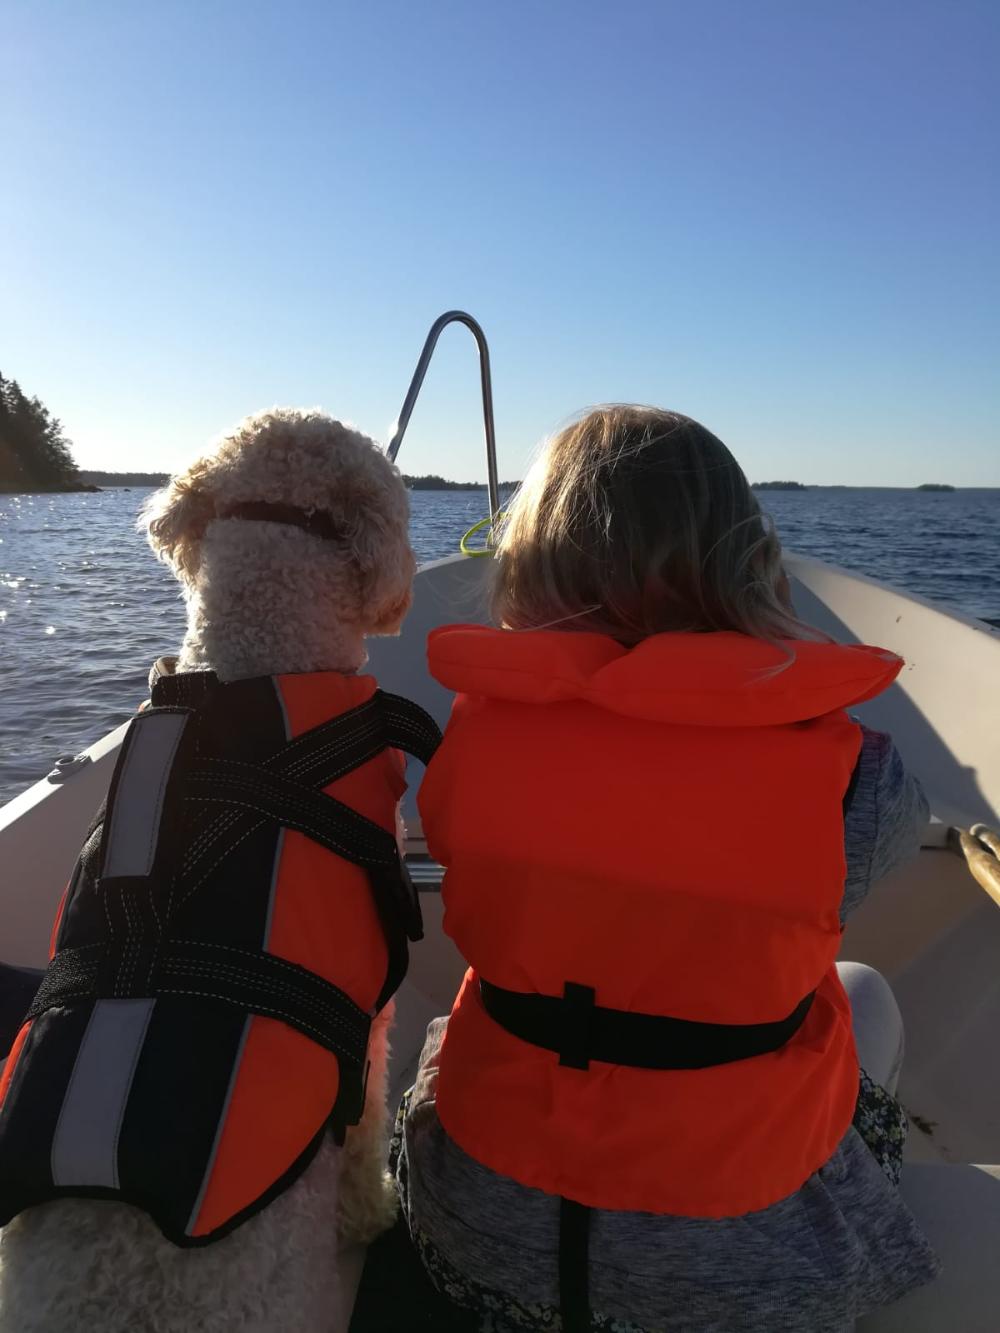 Ett barn och en hund som har flytvästar sitter i en båt och tittar framåt mot havet.